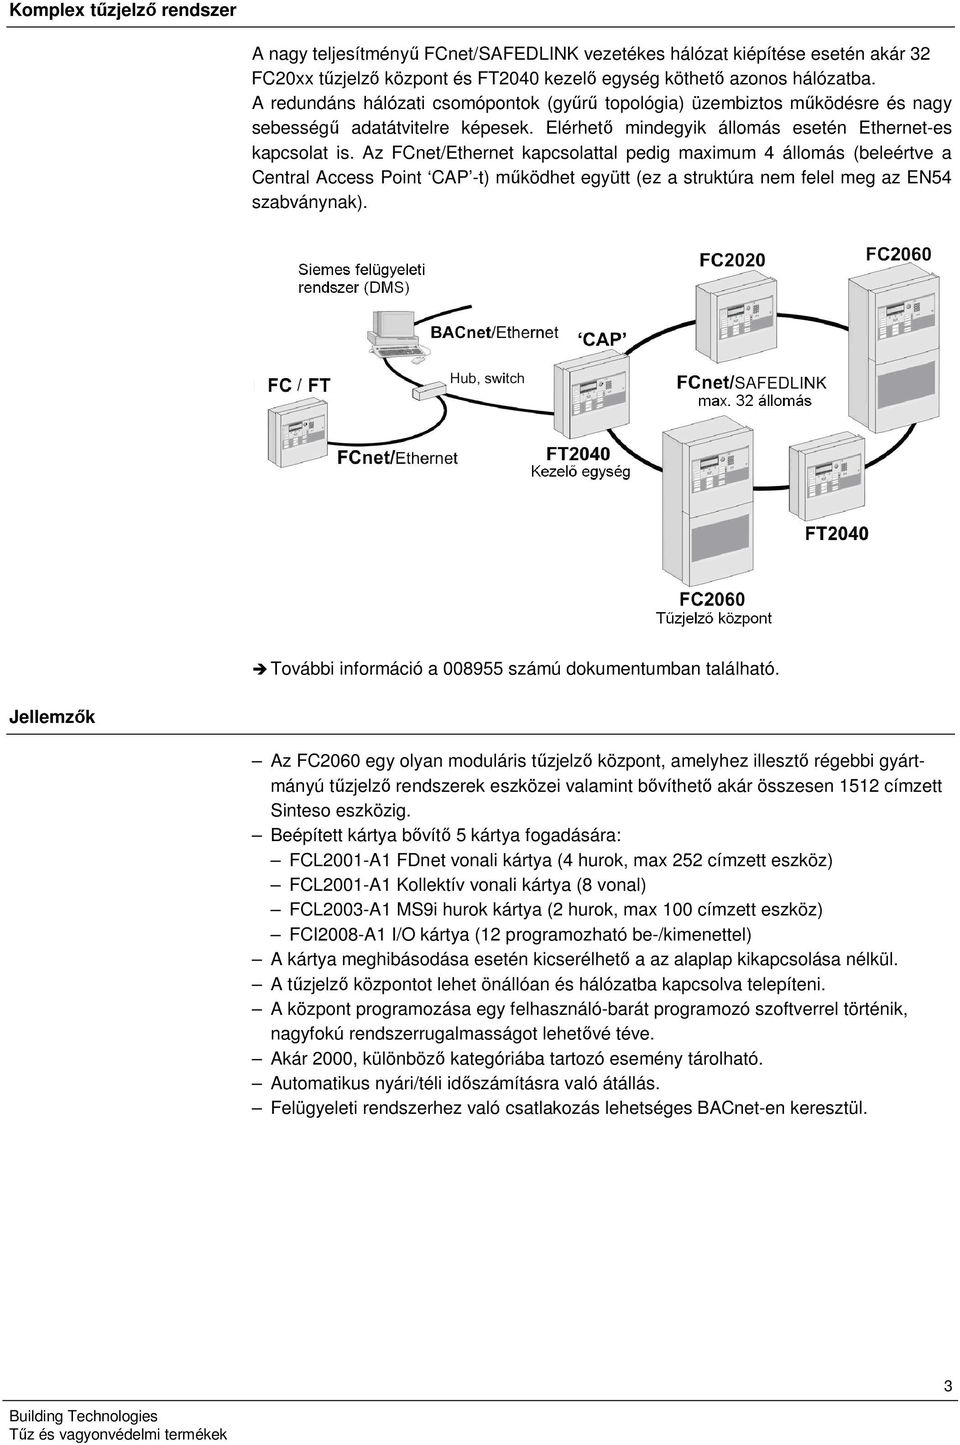 Az FCnet/Ethernet kapcsolattal pedig maximum 4 állomás (beleértve a Central Access Point CAP -t) működhet együtt (ez a struktúra nem felel meg az EN54 szabványnak).